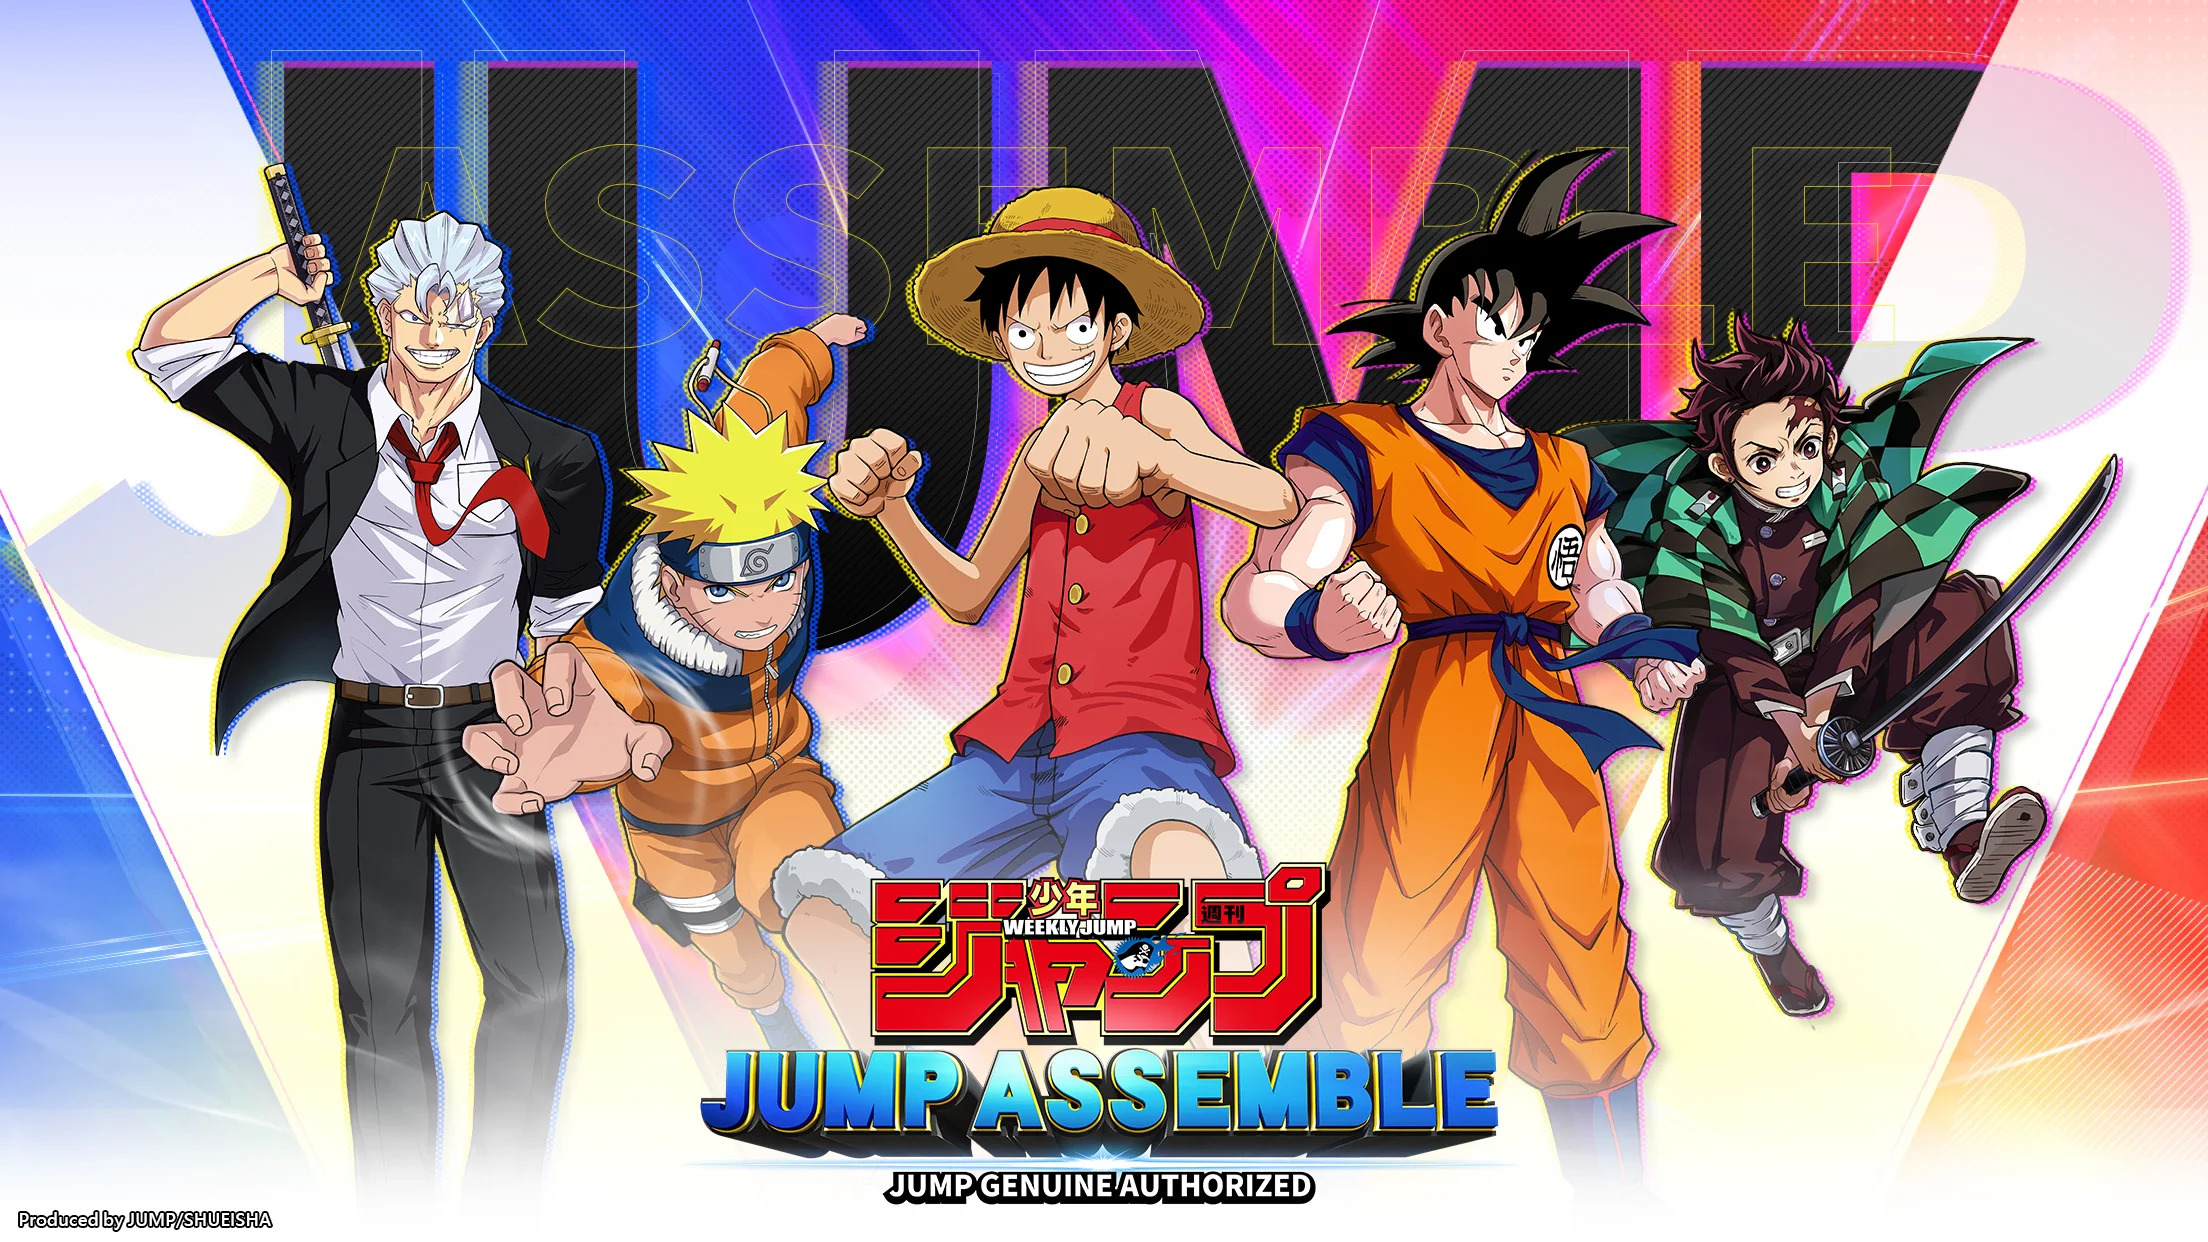 "Jump: Assemble" réunit Goku, Luffy et Naruto dans un jeu mobile pour déterminer qui est le plus fort